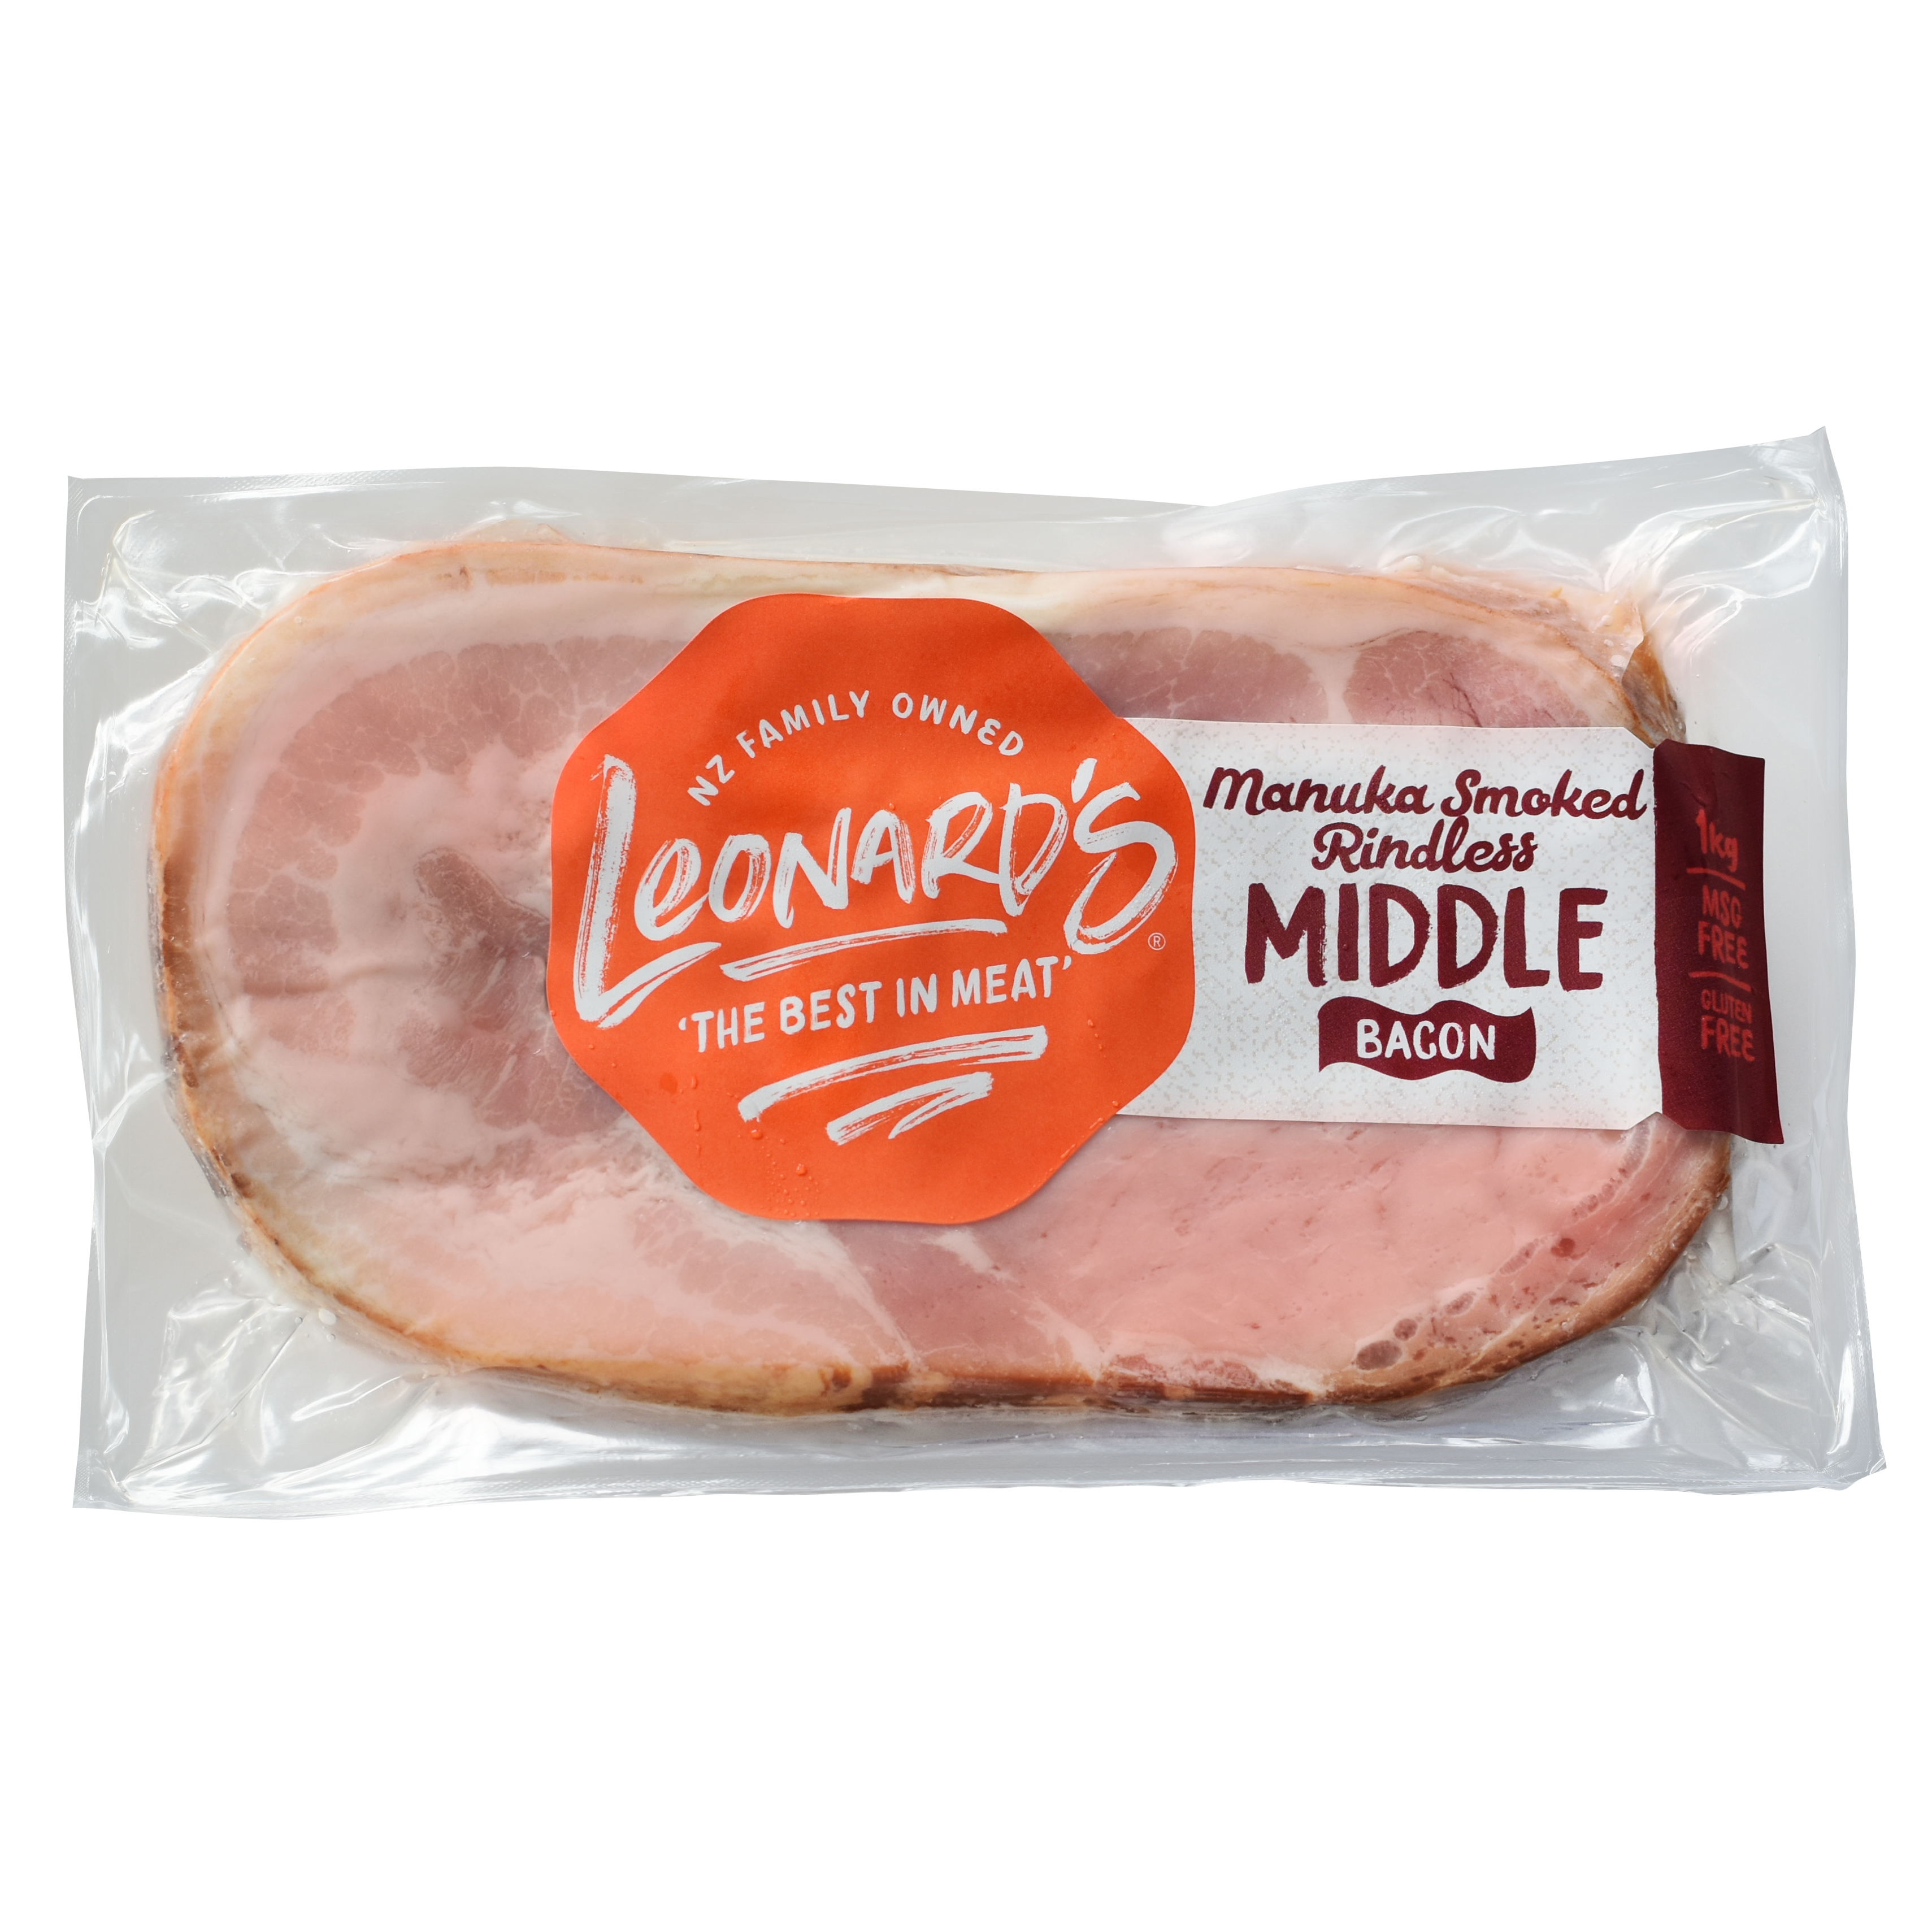 Manuka Smoked Rindless Middle Bacon